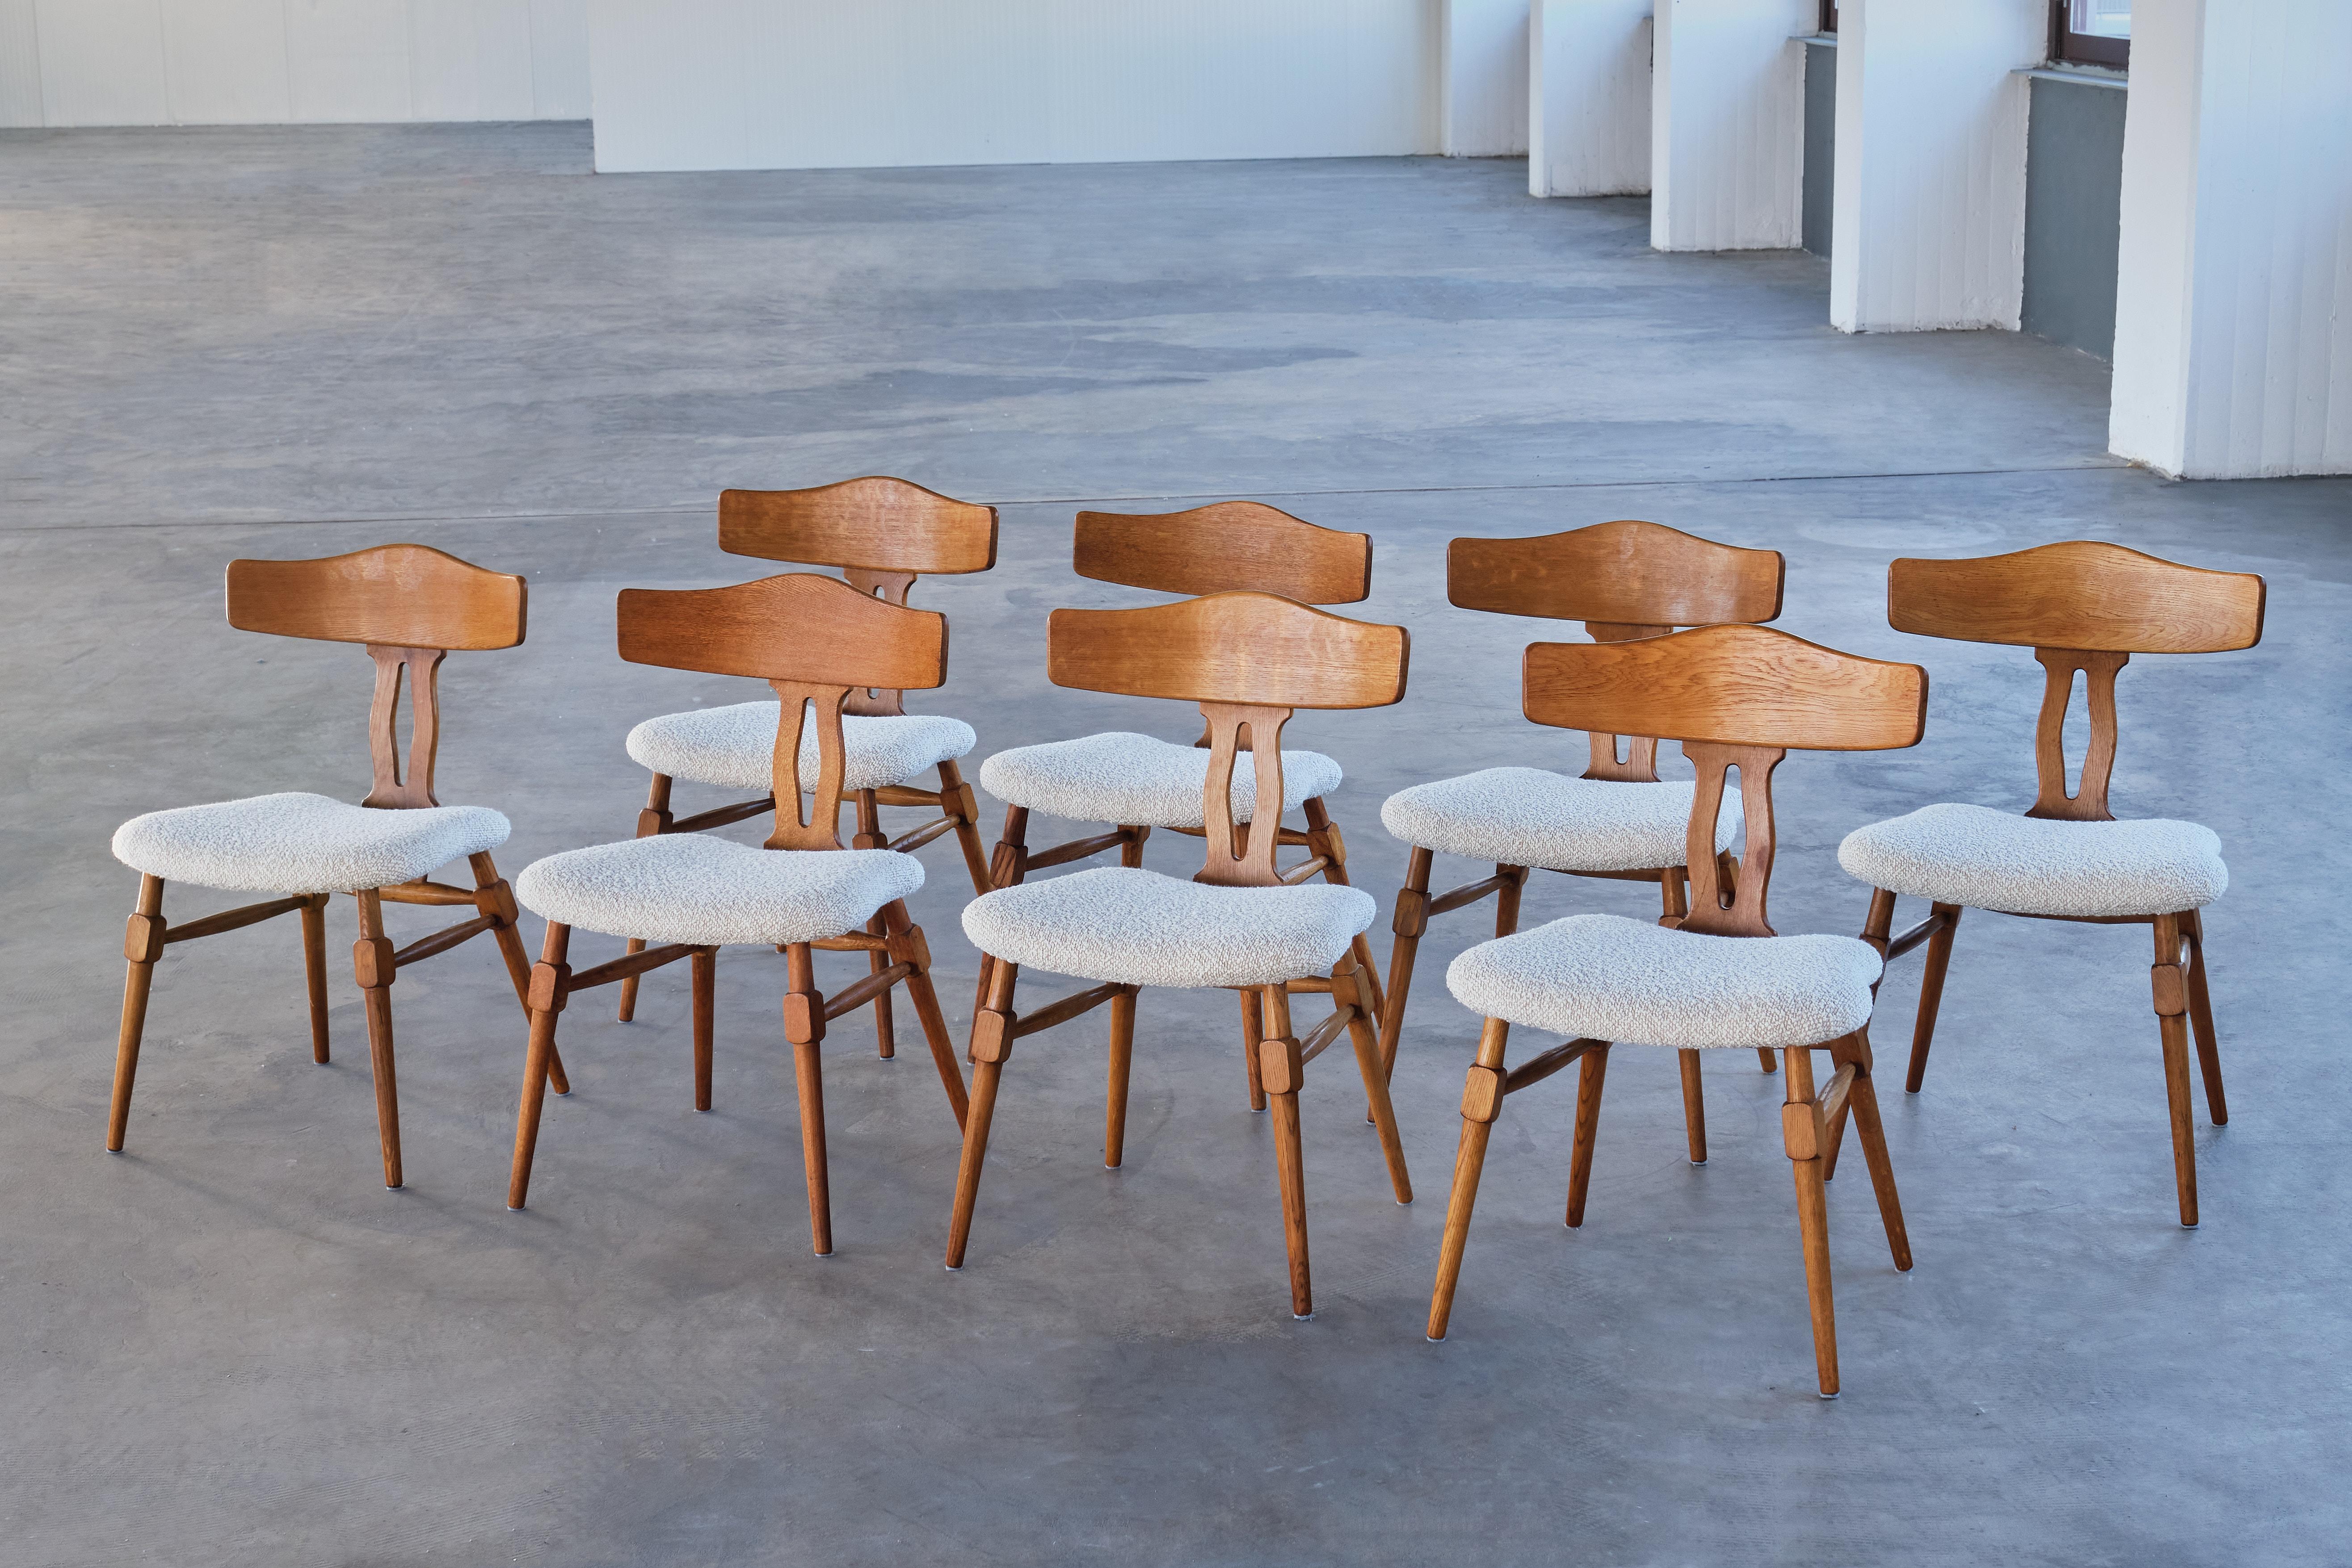 Dieses seltene Set von Esszimmerstühlen wurde von Henning (Henry) Kjærnulf in den späten 1950er Jahren entworfen. Die Stühle wurden von der Nyrup Møbelfabrik in Dänemark hergestellt.  

Das Set besteht aus acht Stühlen aus massivem Eichenholz mit